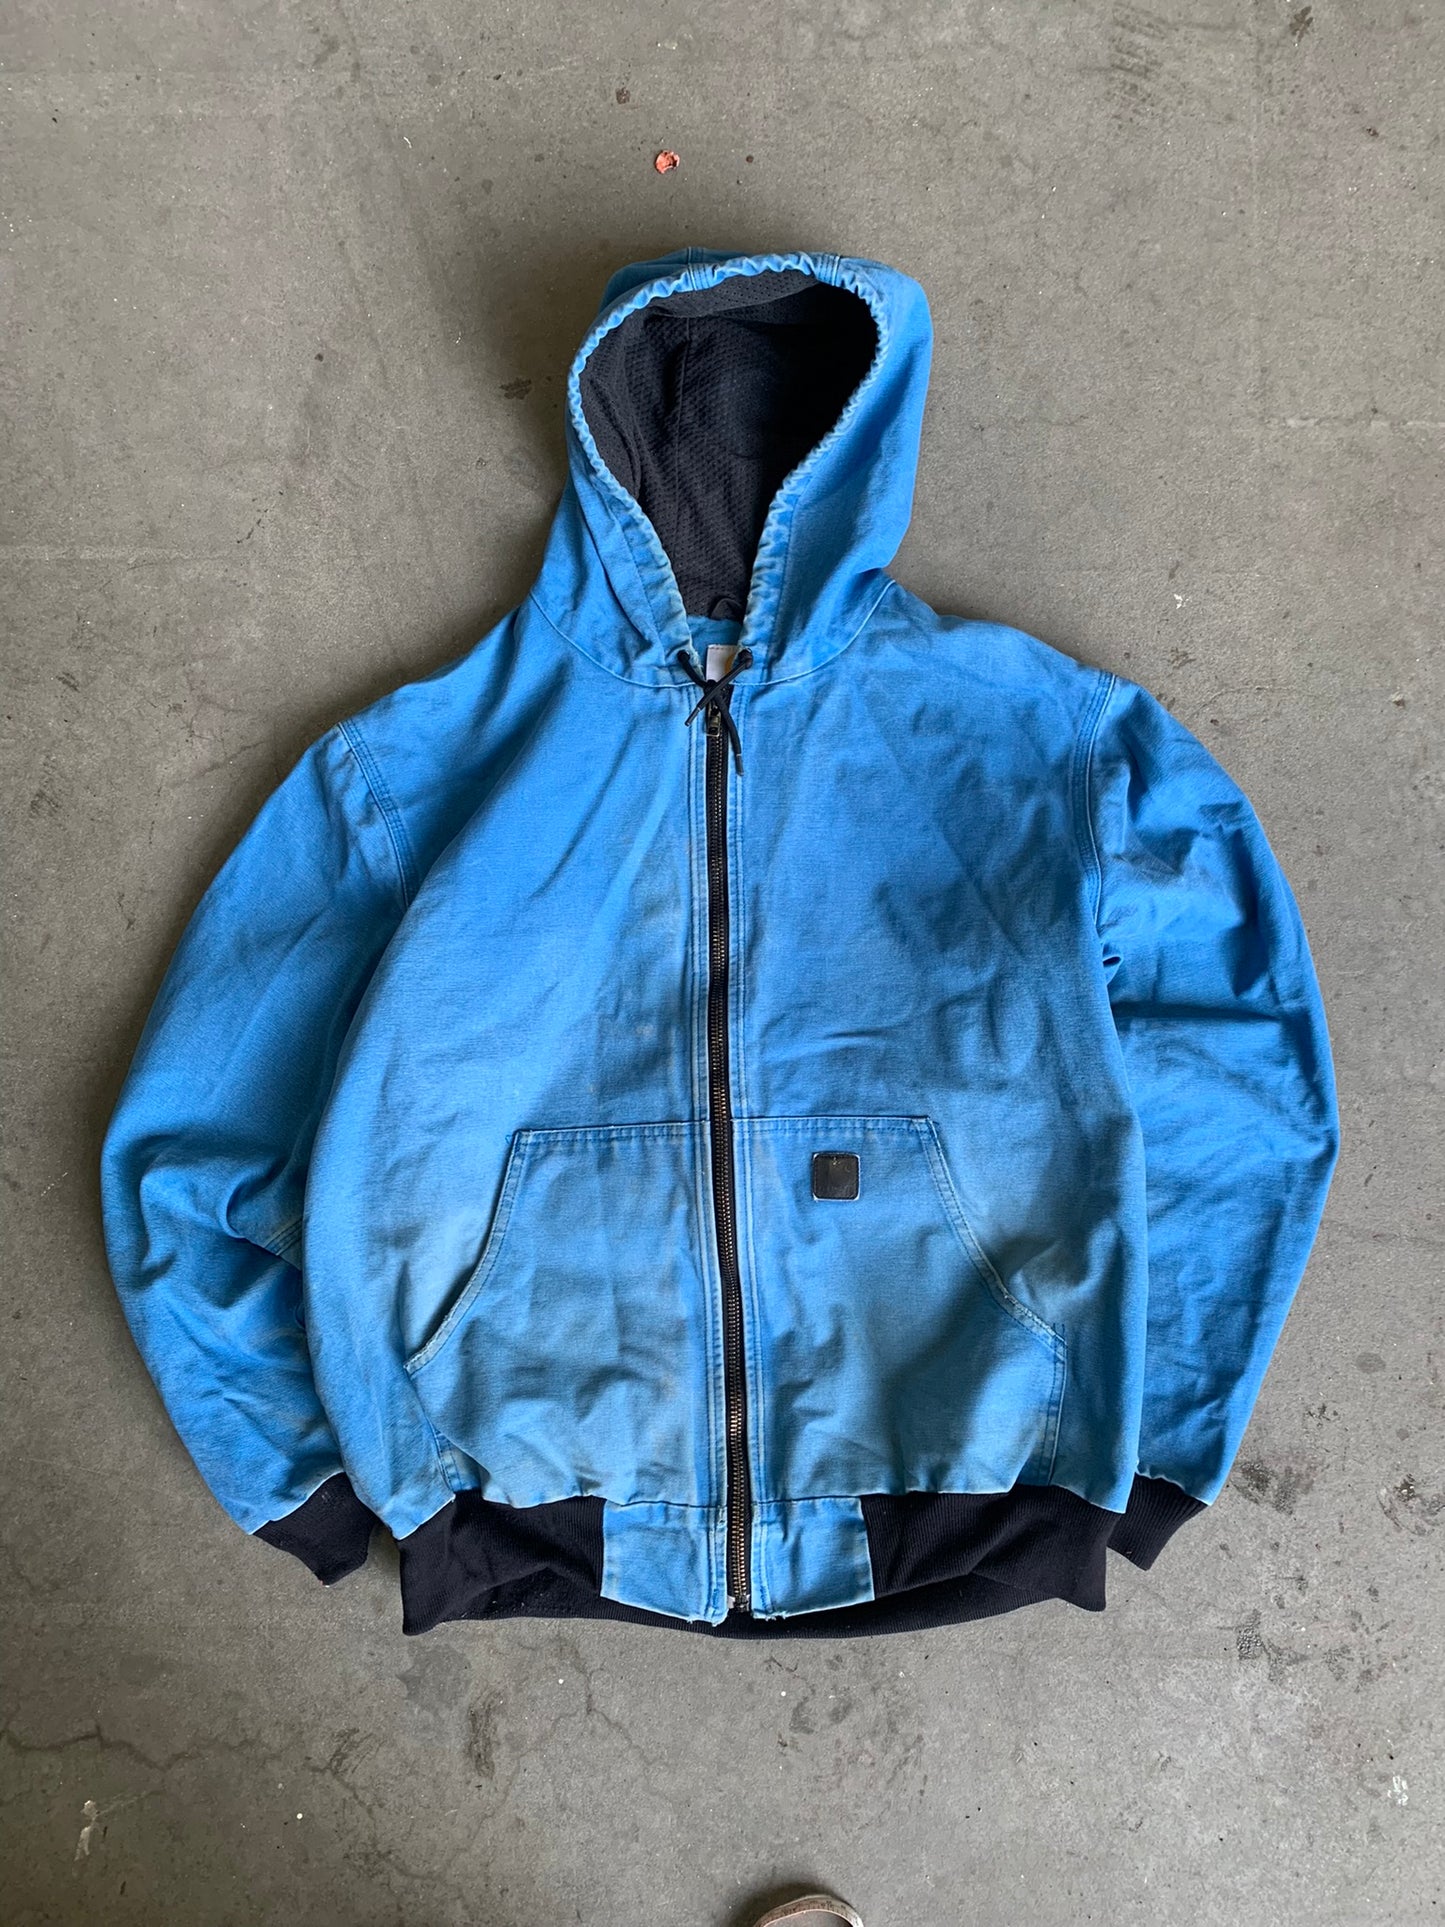 (XL/2X) Vintage Carhartt Deep Blue Hooded Jacket